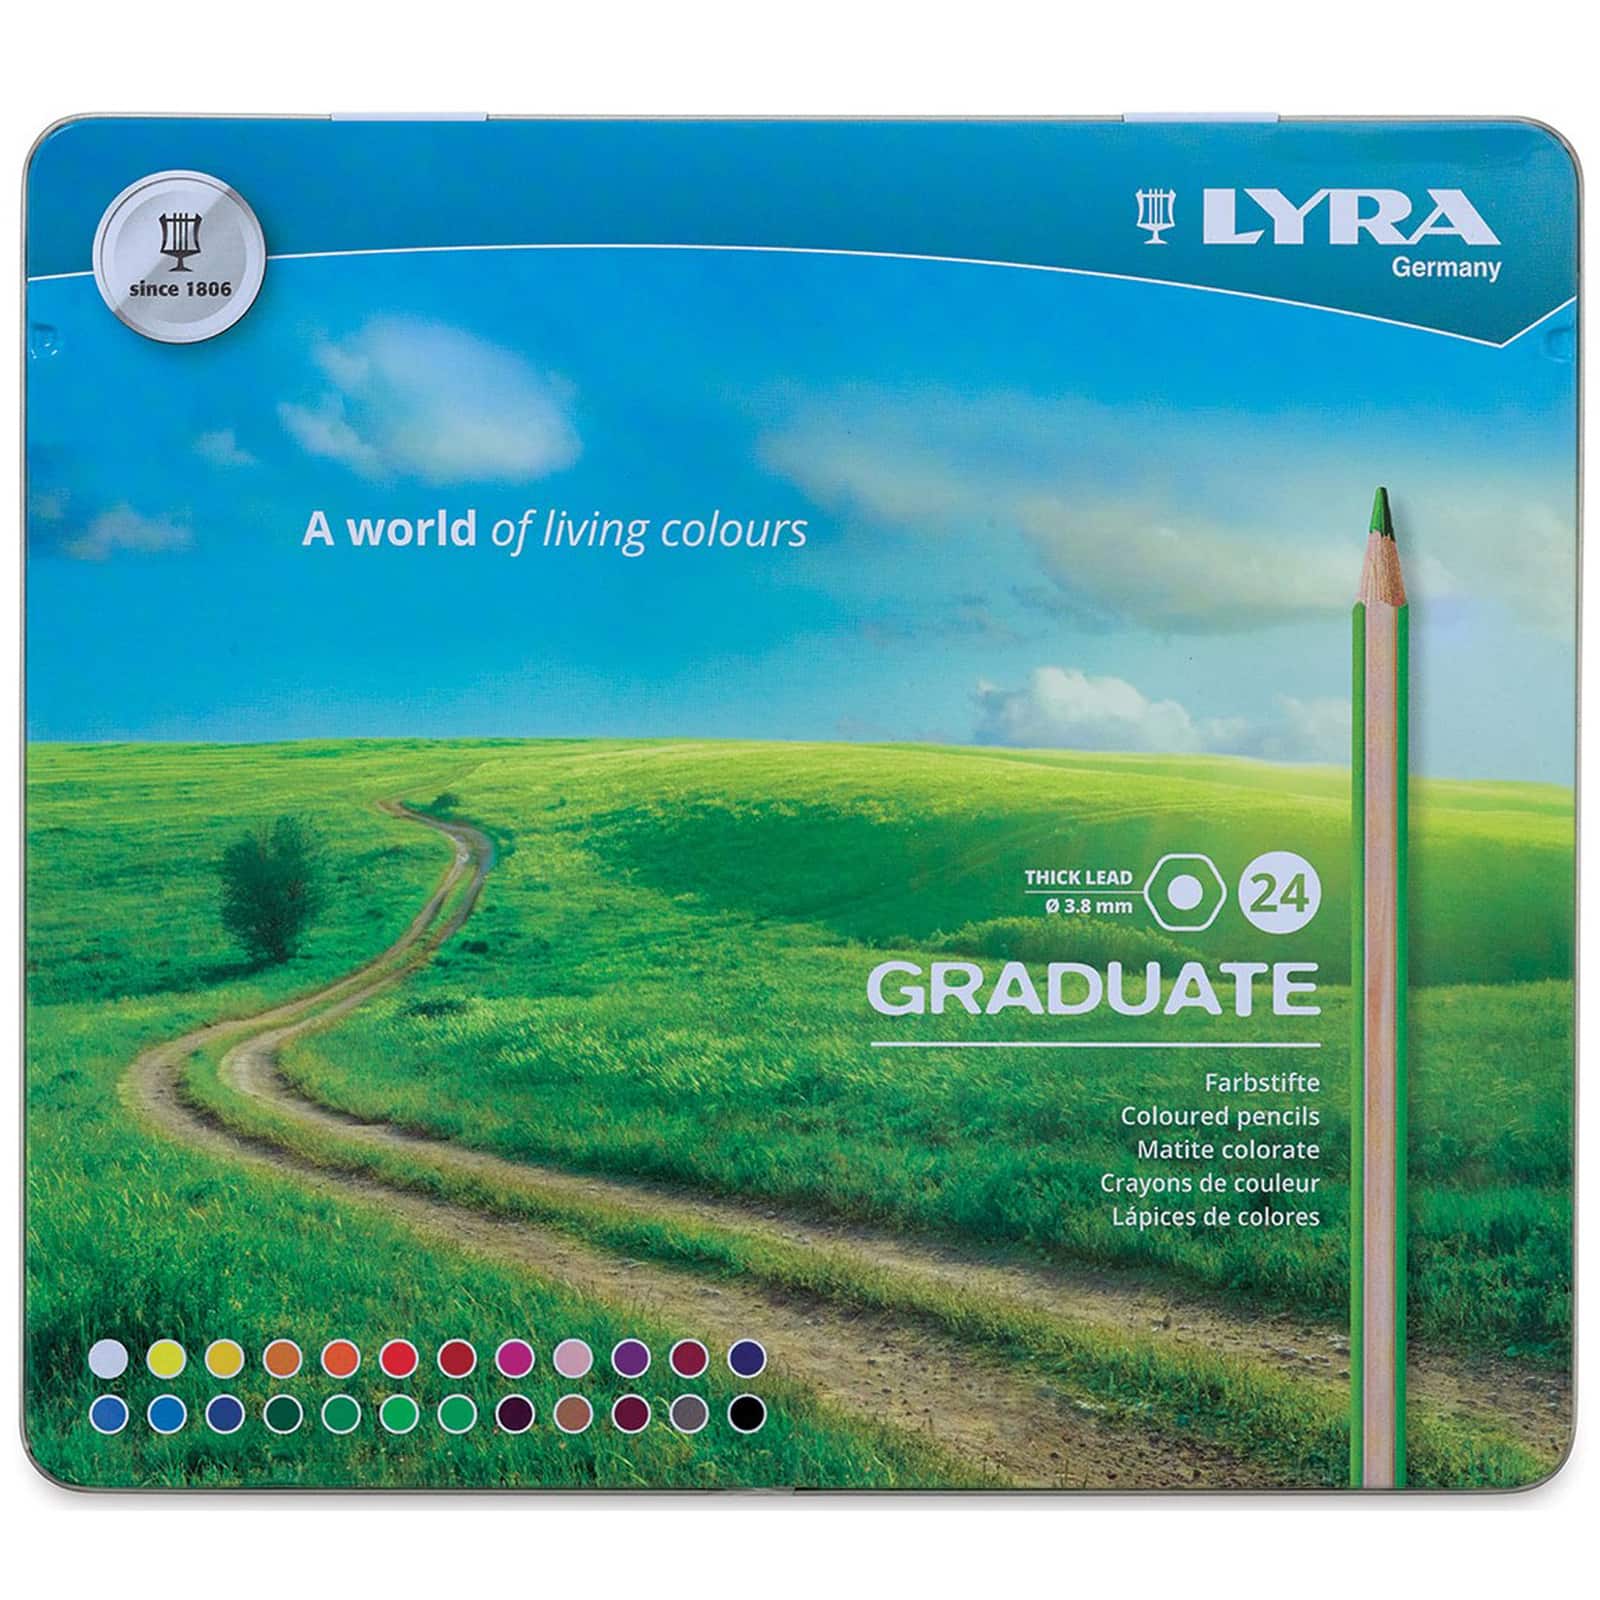 Lyra Graduate 24 Colored Pencils in Metal Box